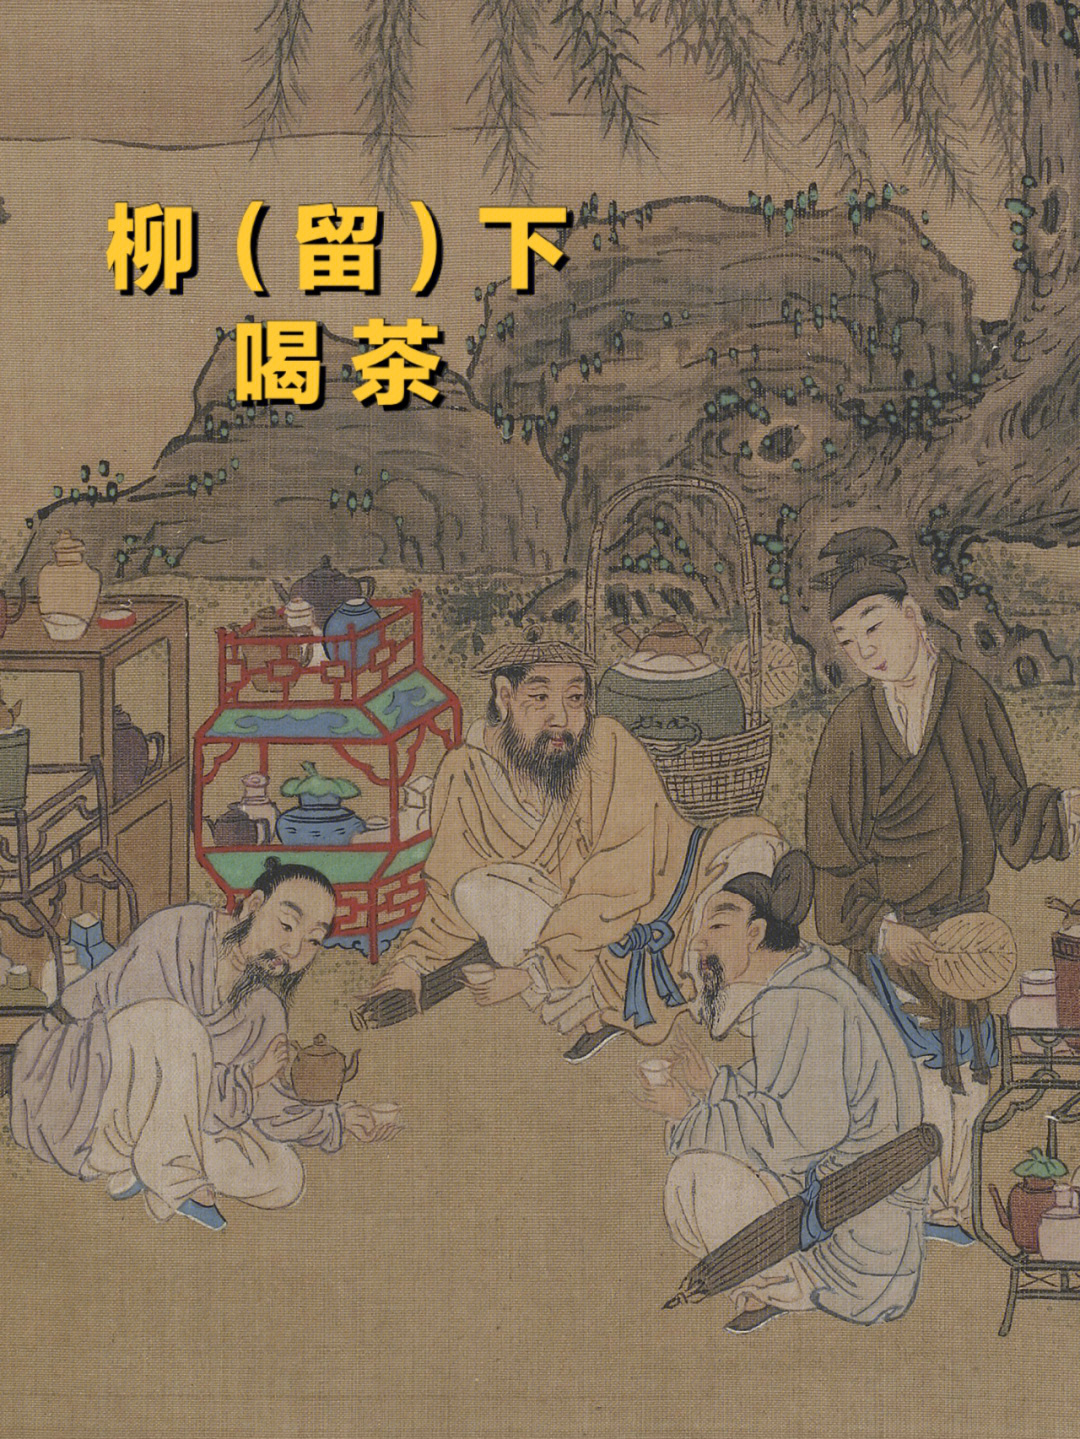 古人喝茶的仪式感丨古画里的茶文化